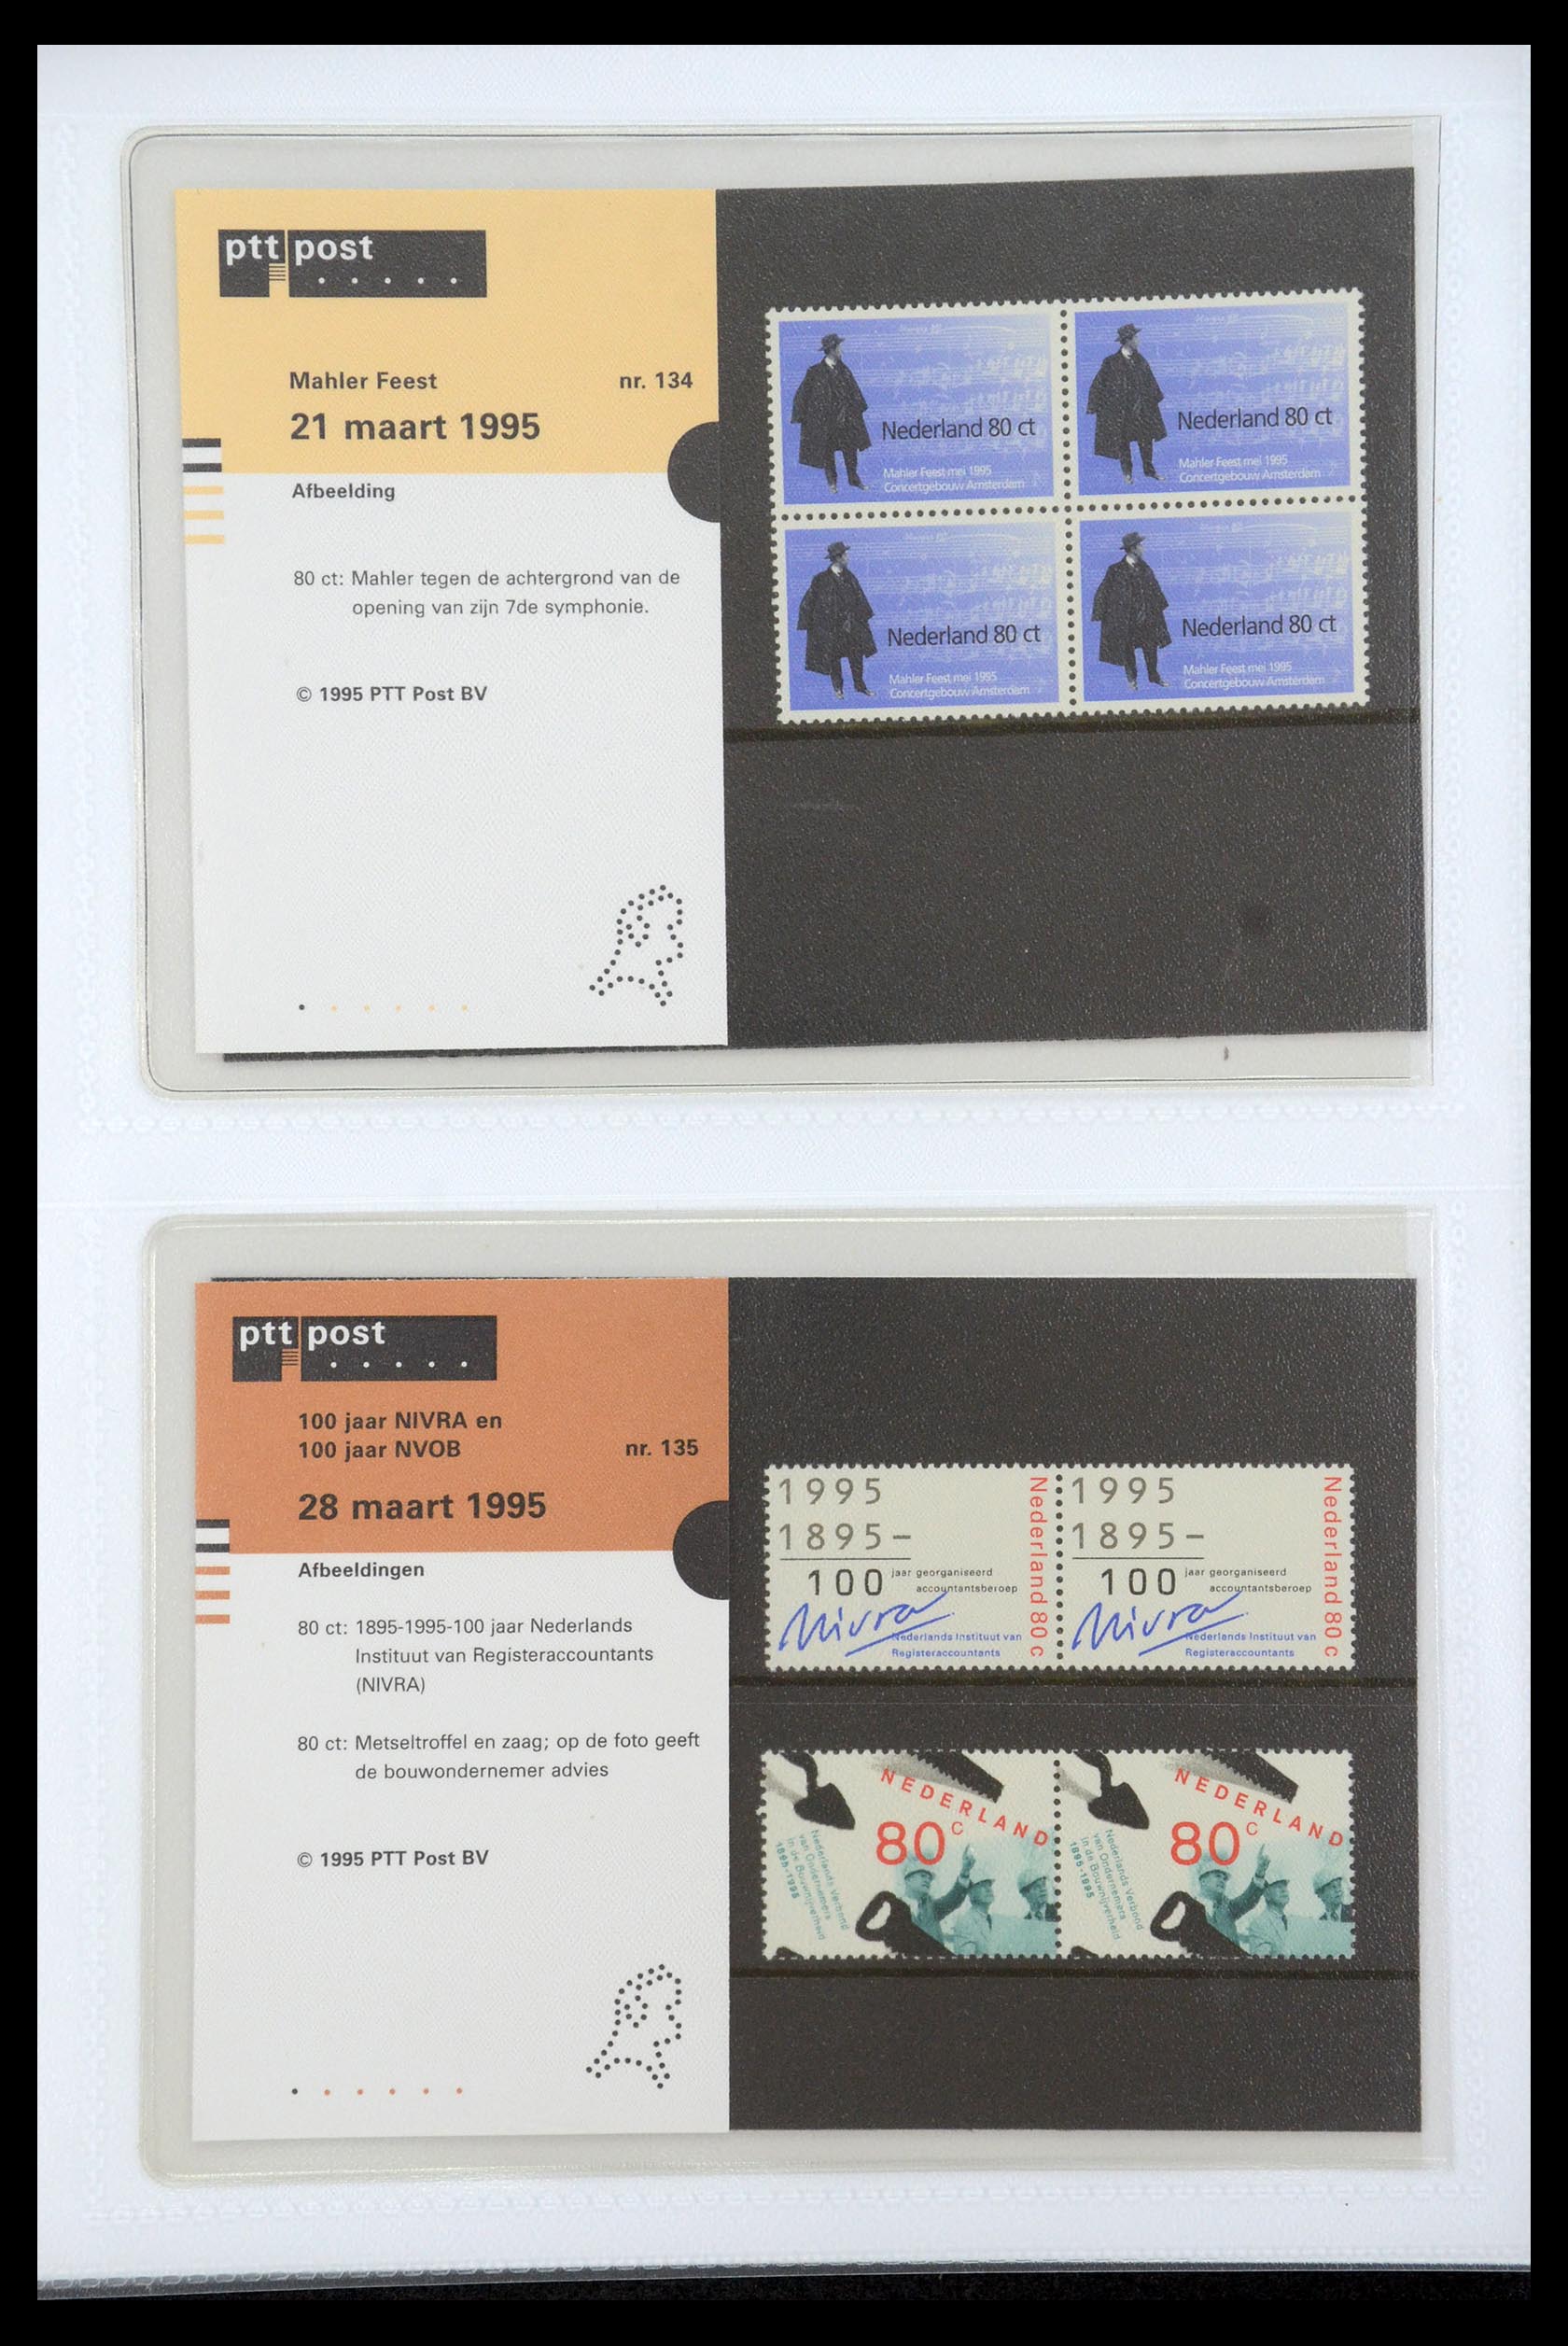 35947 070 - Stamp Collection 35947 Netherlands PTT presentation packs 1982-2019!